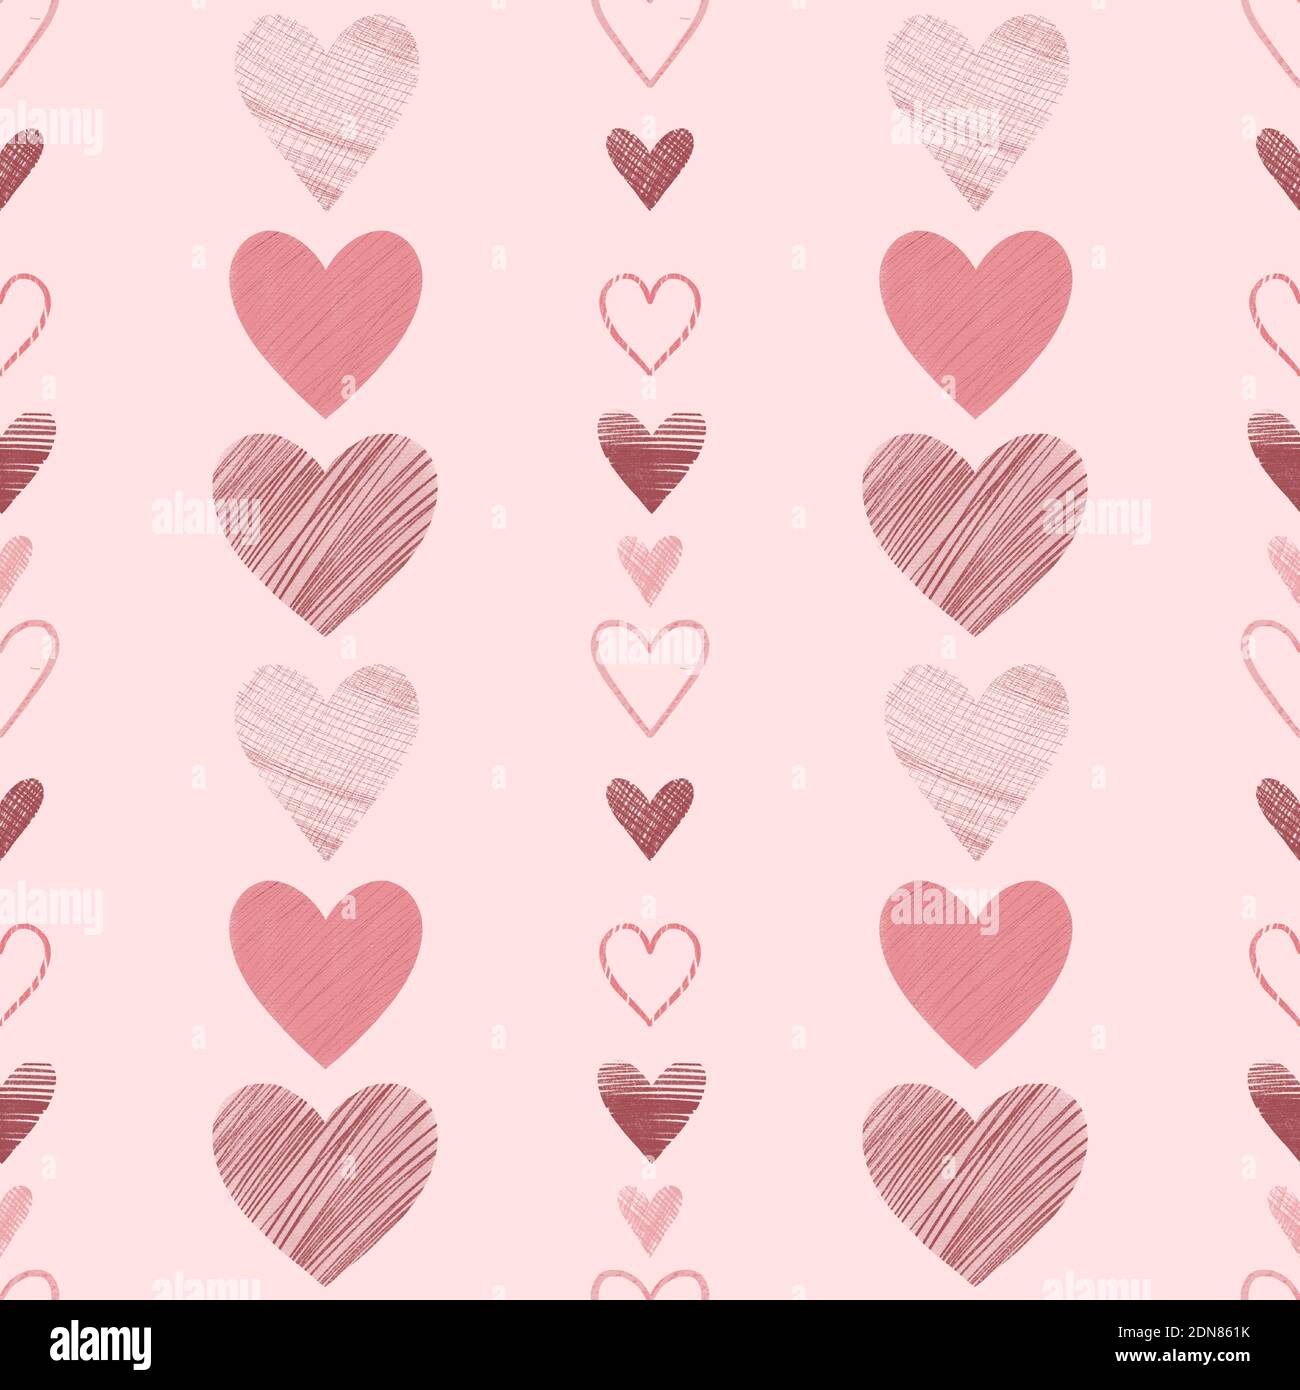 Nahtloses Muster mit handgezeichneten Herzen für Grußkarten, Geschenkpapier, Hochzeit, Geburtstag, Stoff, Textil, Valentinstag, Muttertag, ostern. Stockfoto